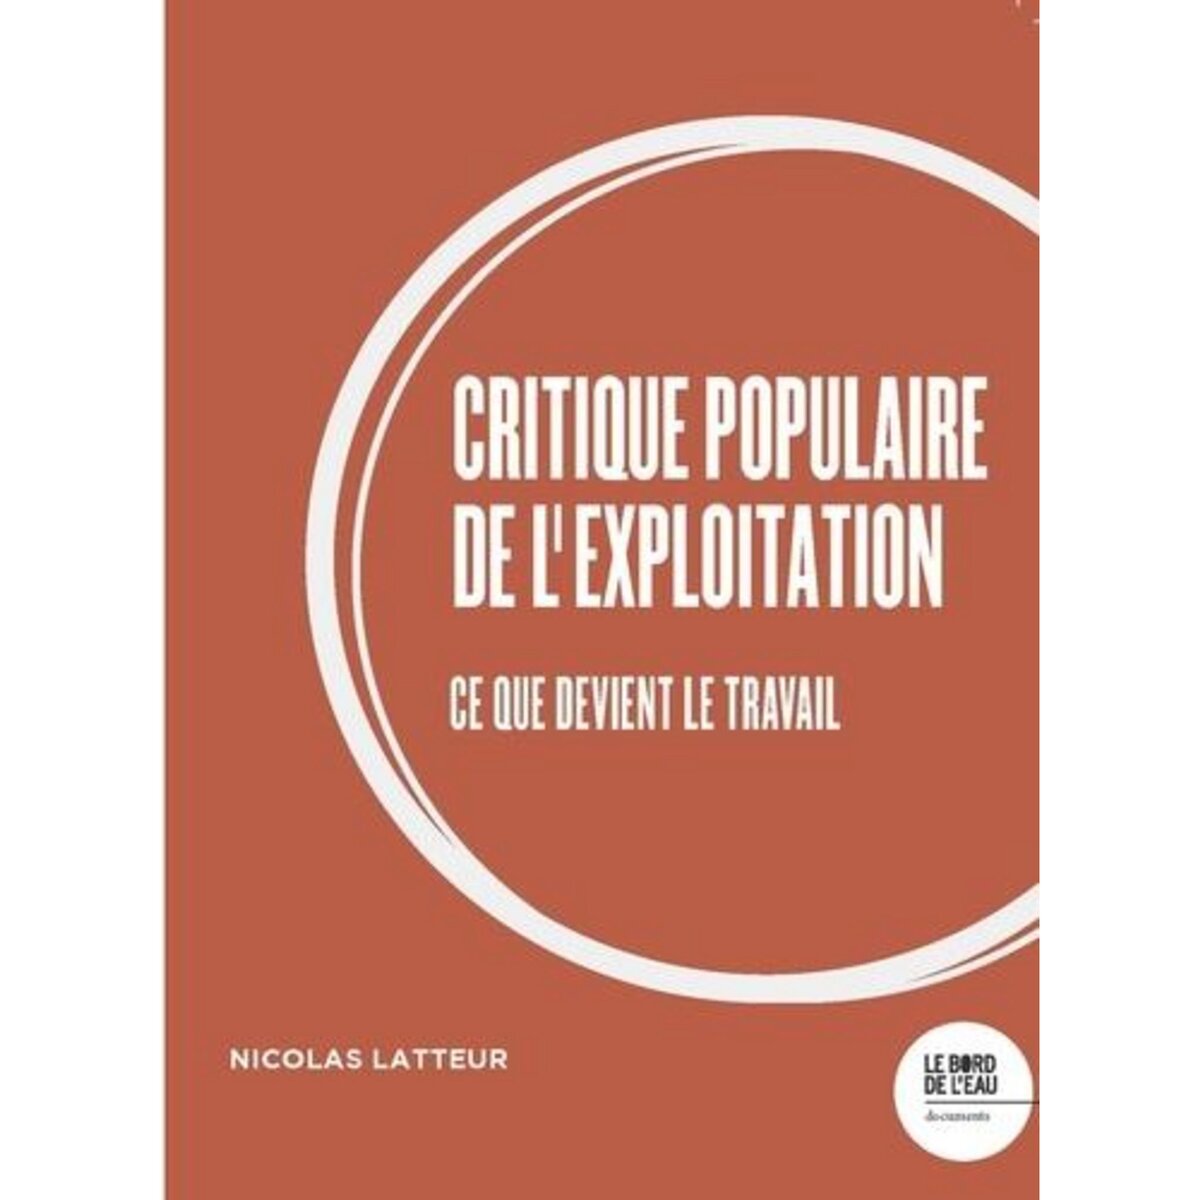  CRITIQUE POPULAIRE DE L'EXPLOITATION. CE QUE DEVIENT LE TRAVAIL, Latteur Nicolas